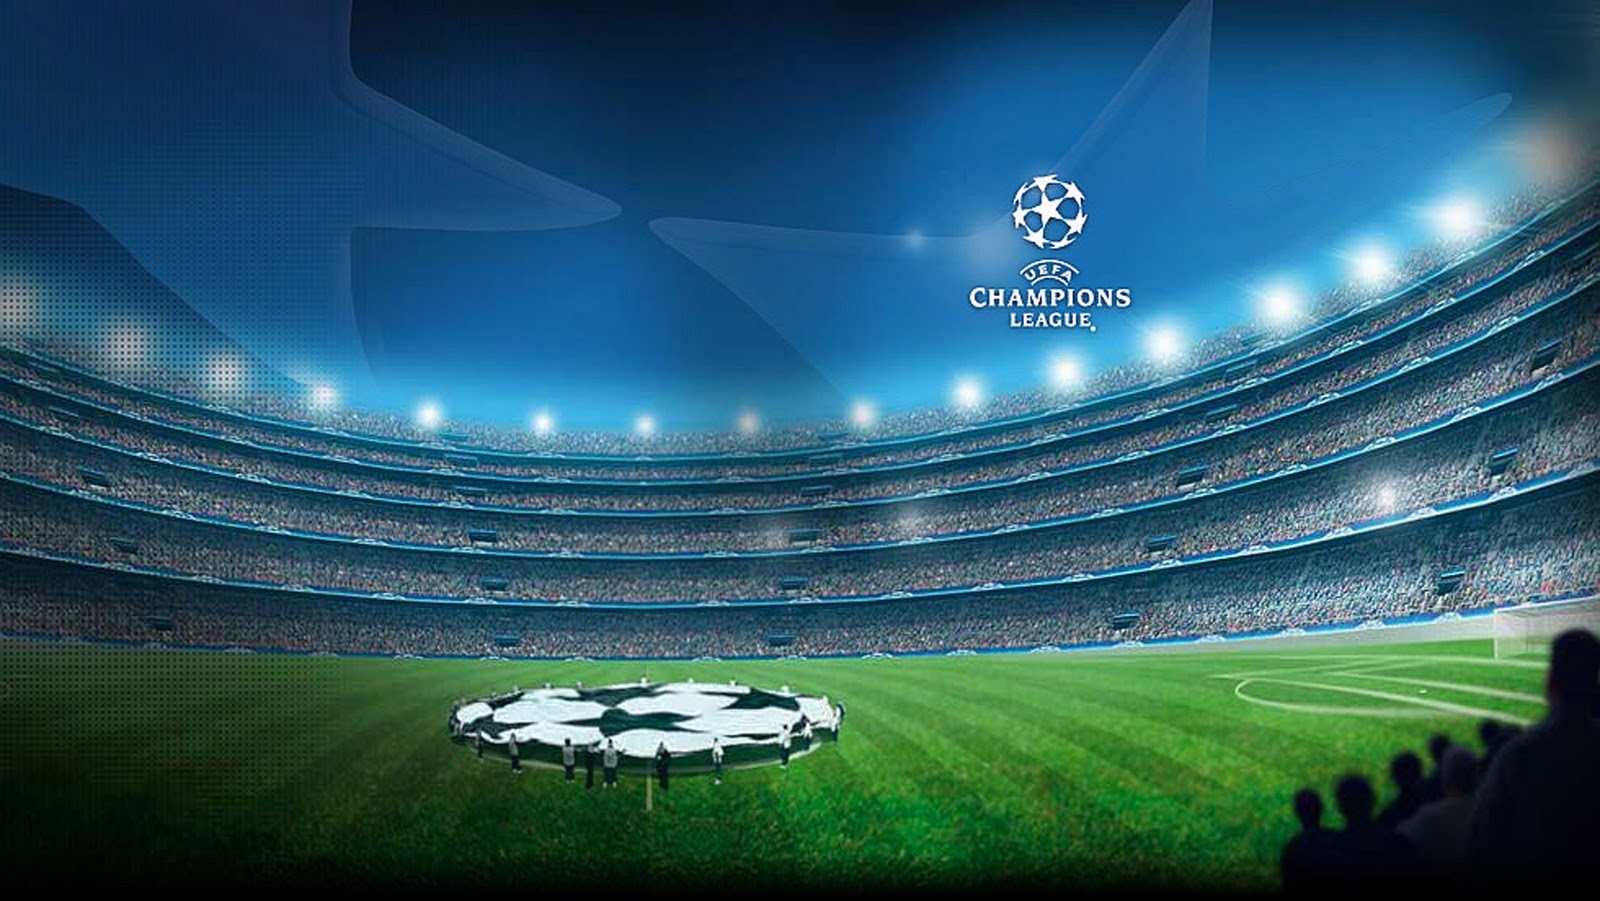 fond d'écran de la ligue des champions,stade,stade spécifique au football,atmosphère,règles internationales football,football